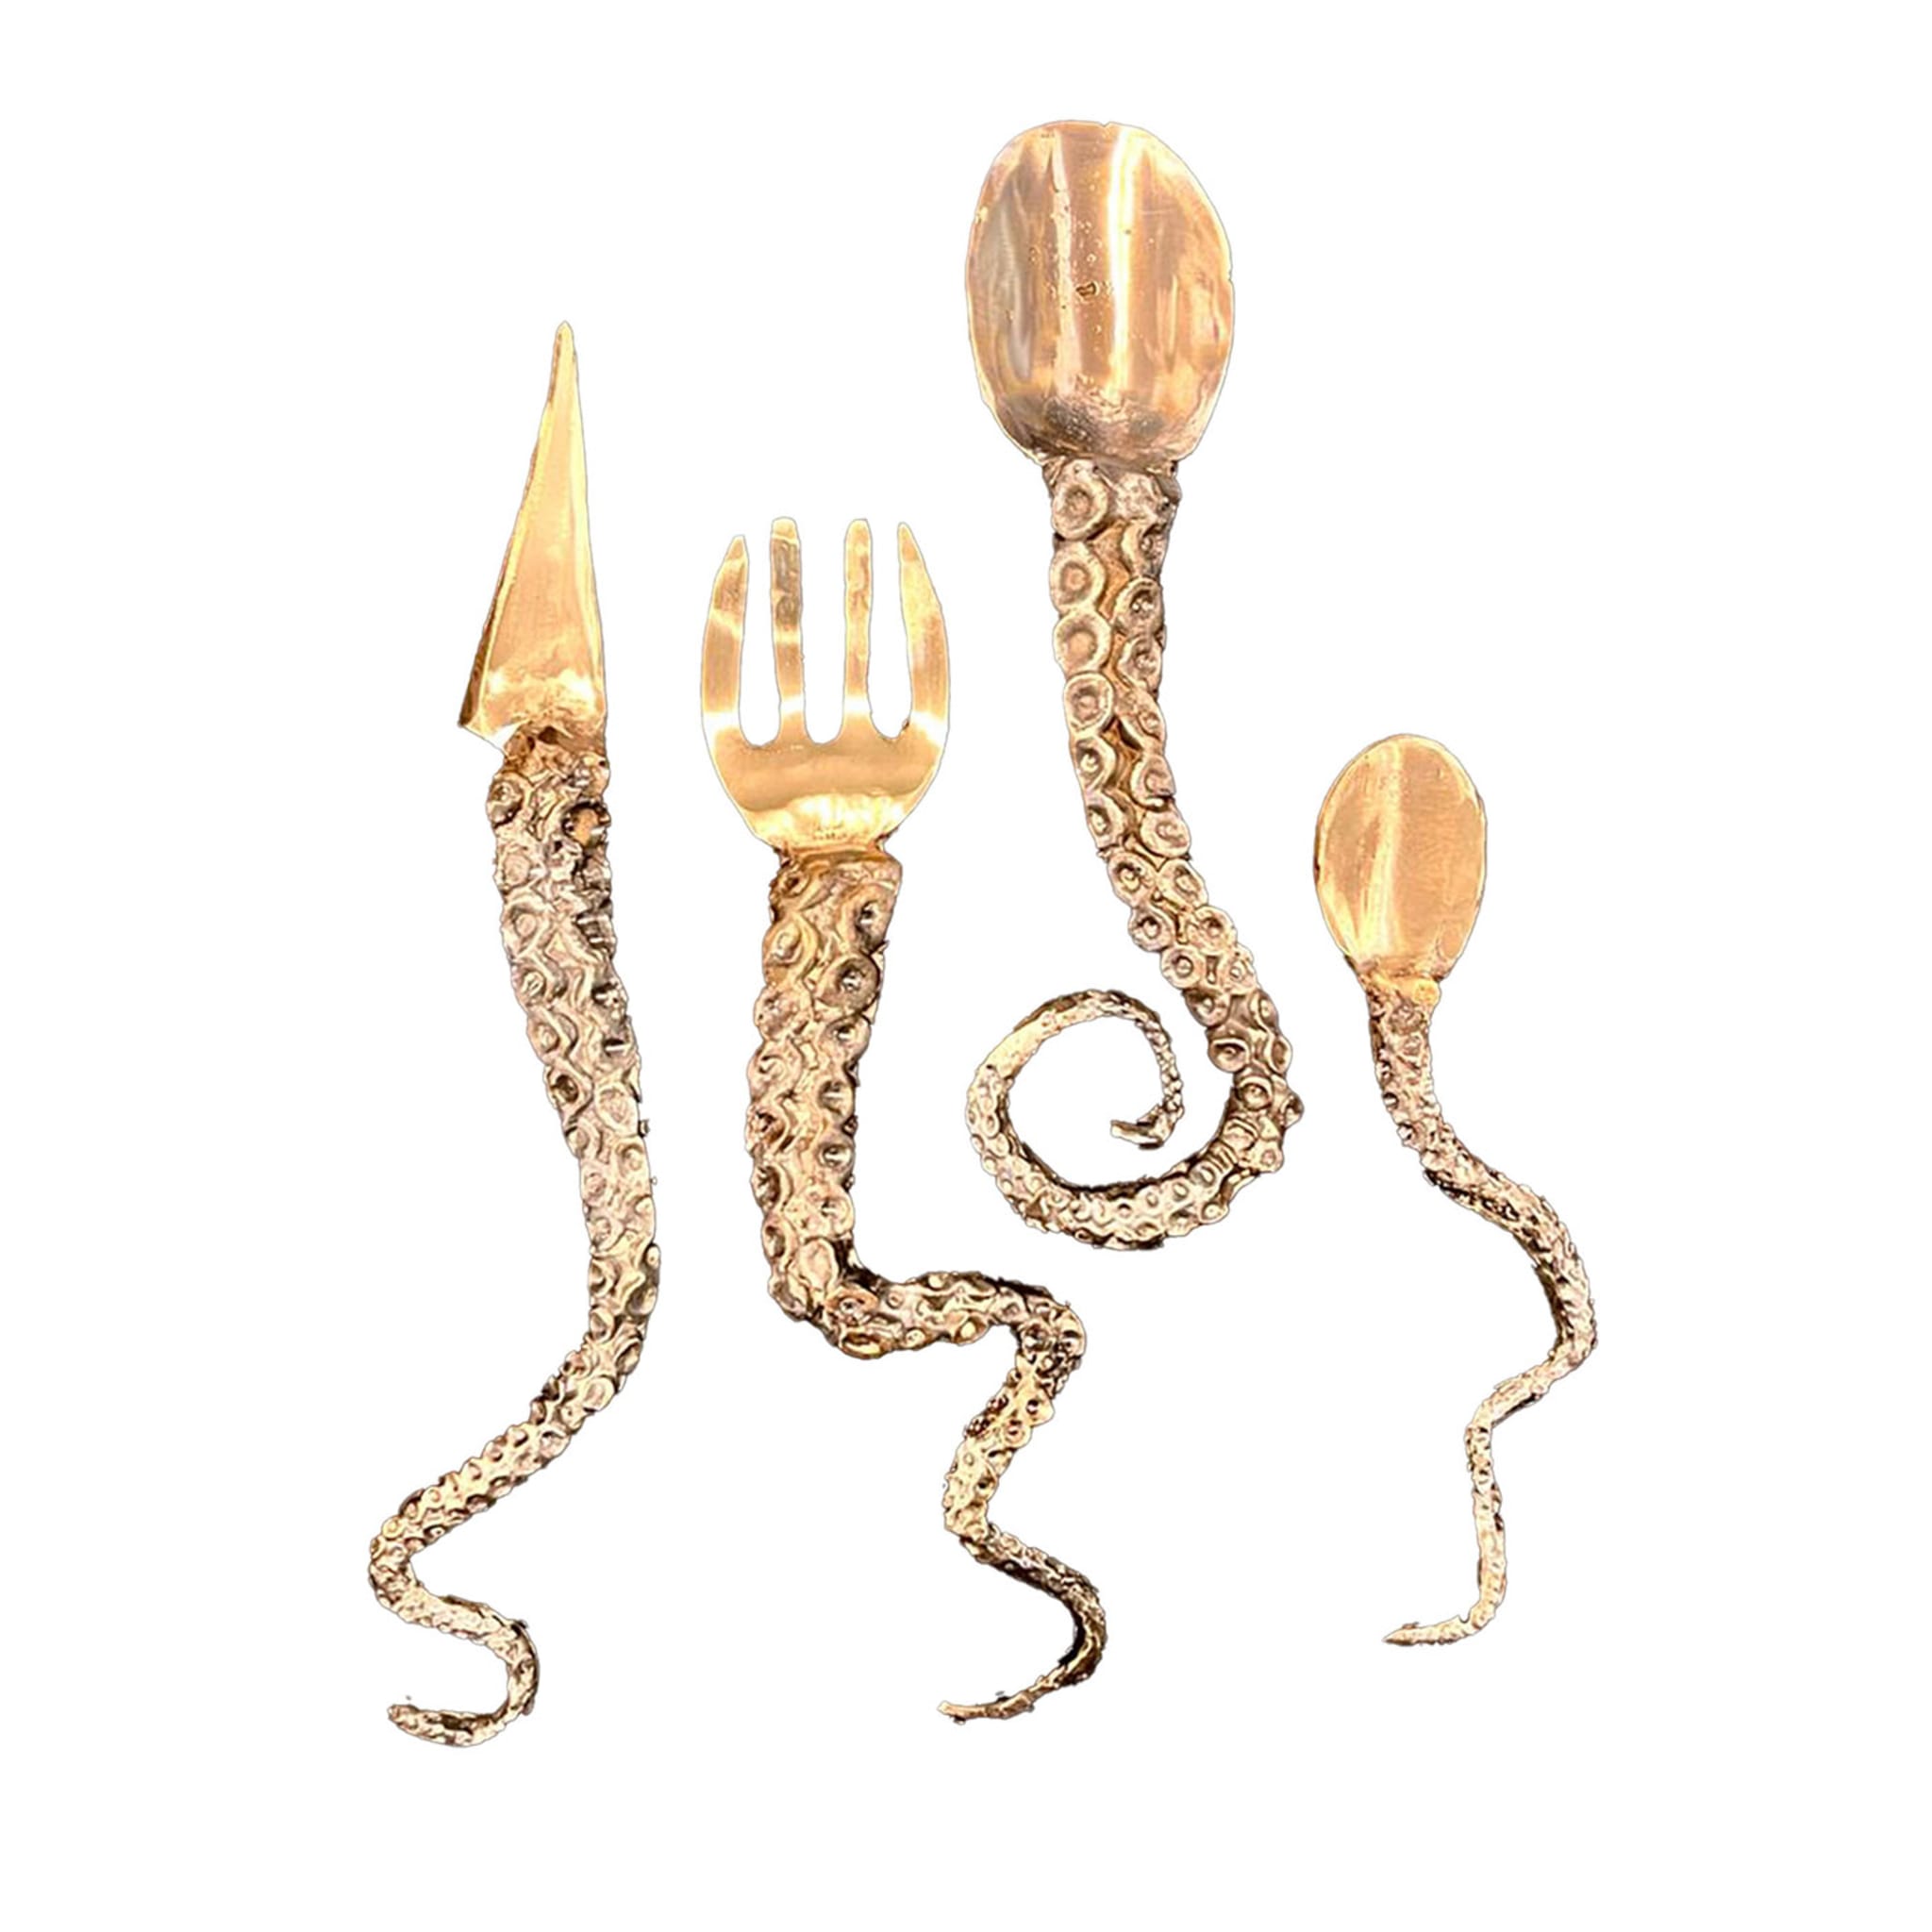 Gothic Bronze Luxury Cutlery Set